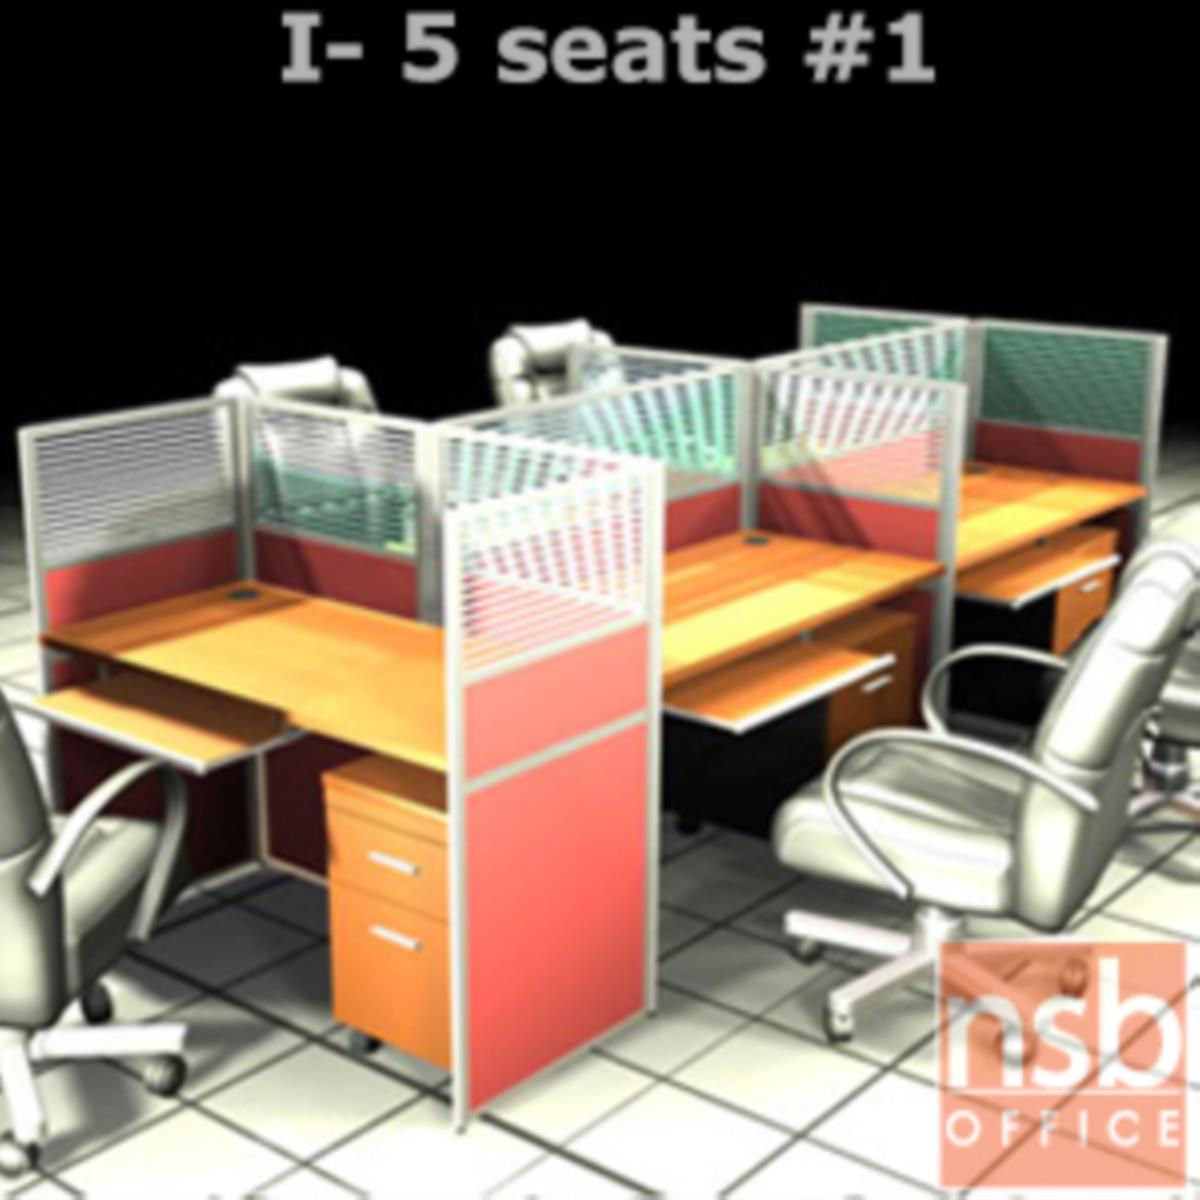 A04A087:ชุดโต๊ะทำงานกลุ่ม 5 ที่นั่ง   ขนาดรวม 306W*126D cm. พร้อมพาร์ทิชั่นครึ่งกระจกขัดลาย